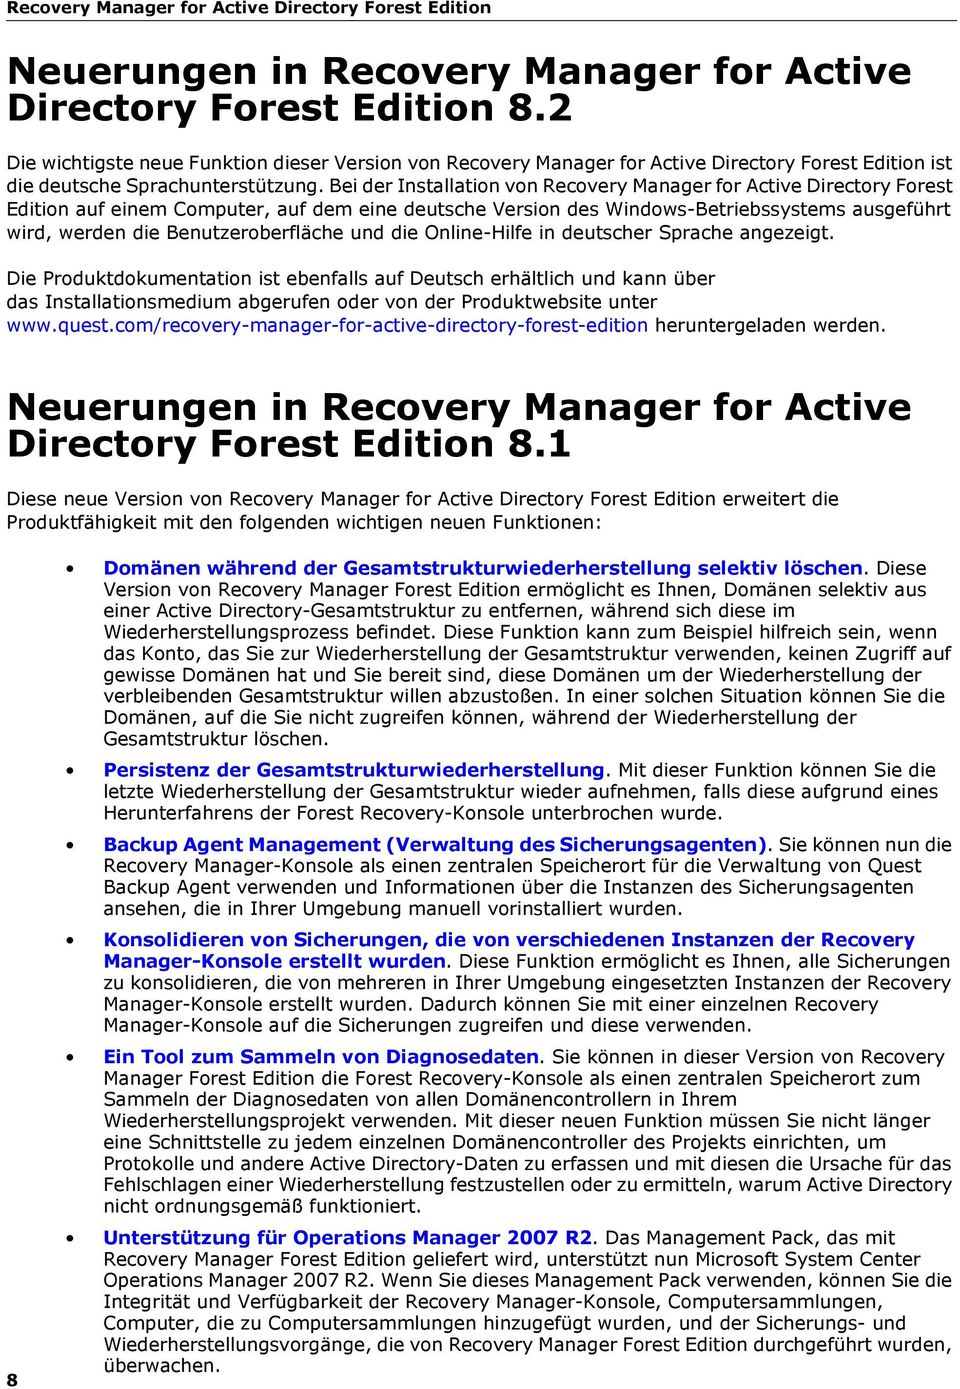 Bei der Installation von Recovery Manager for Active Directory Forest Edition auf einem Computer, auf dem eine deutsche Version des Windows-Betriebssystems ausgeführt wird, werden die